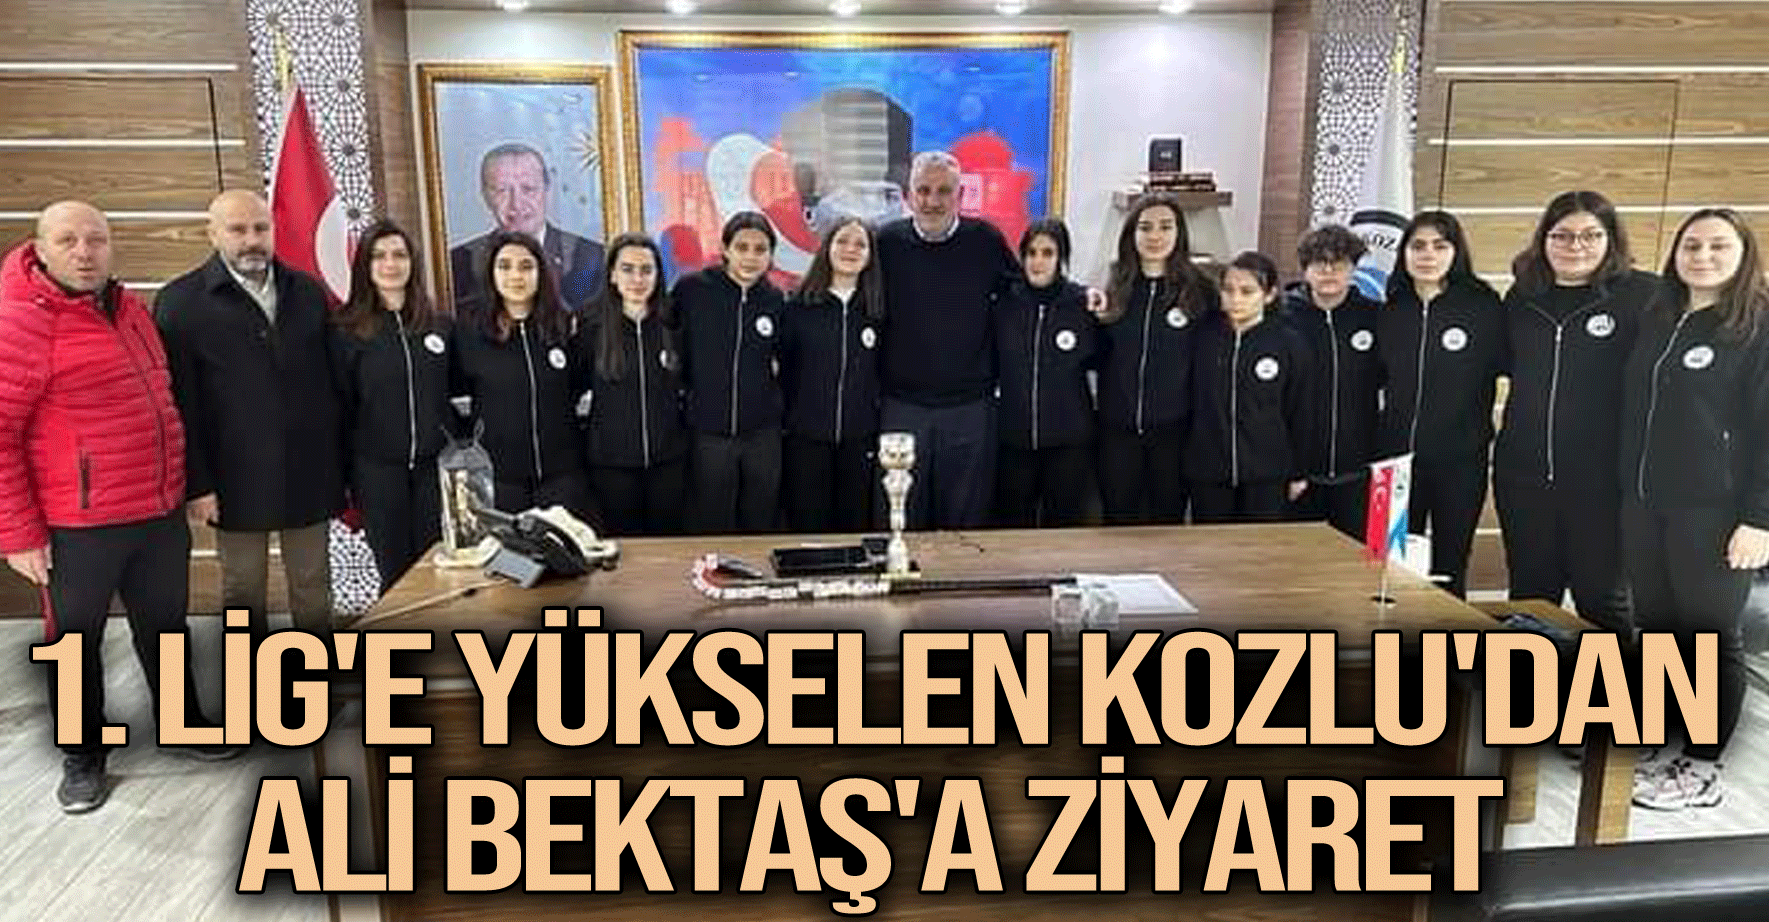 1. Lig'e yükselen Kozlu'dan Ali Bektaş'a ziyaret